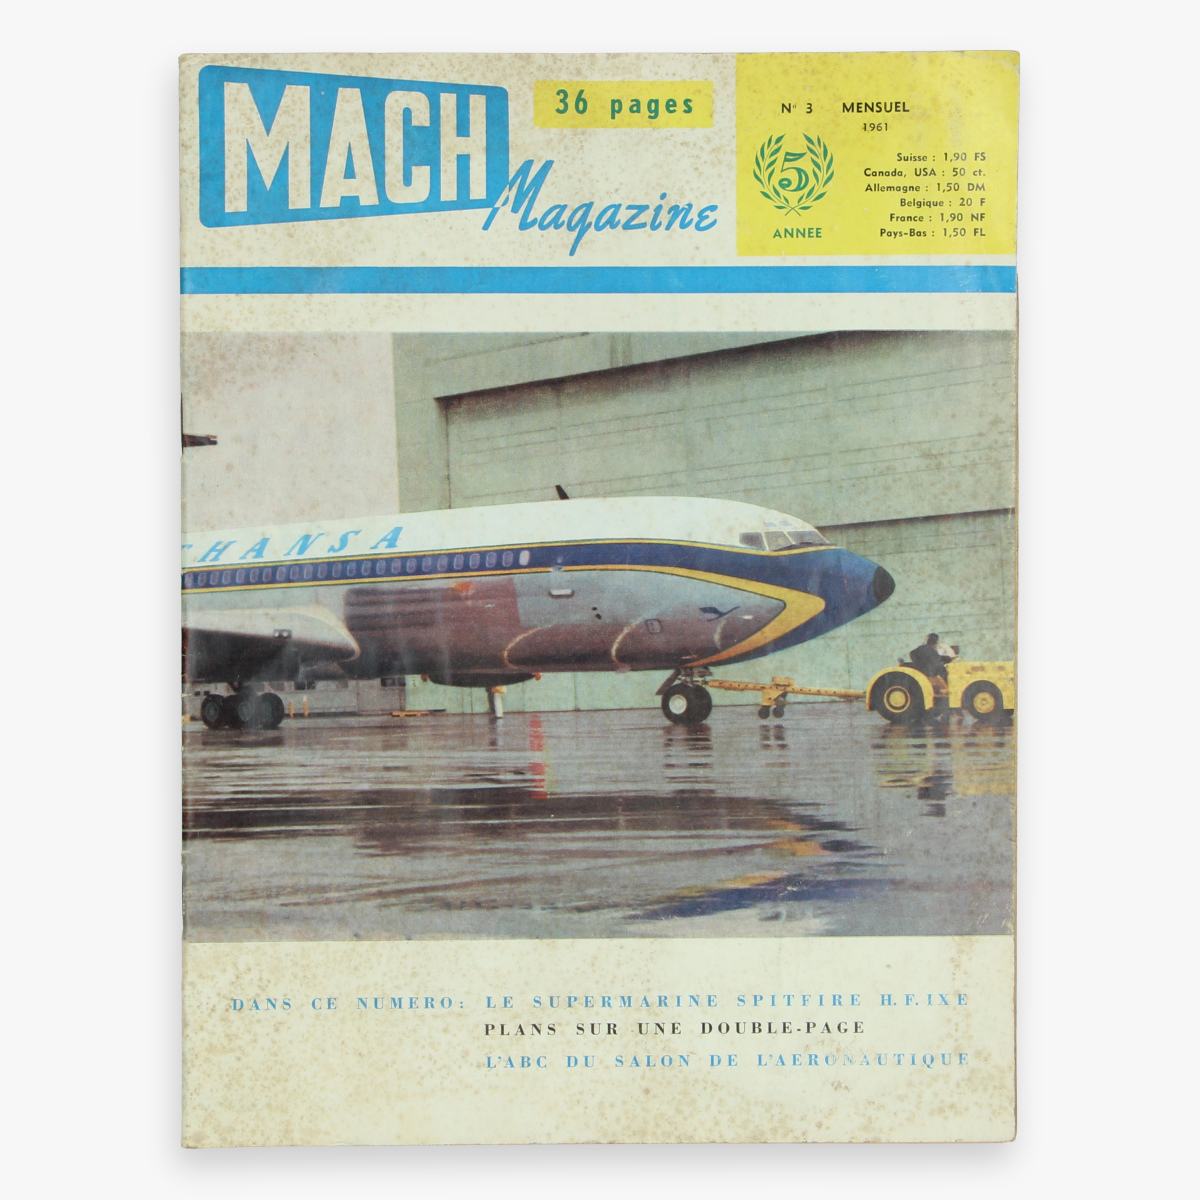 Afbeeldingen van luchtvaart mach magazine n°3 - 1961